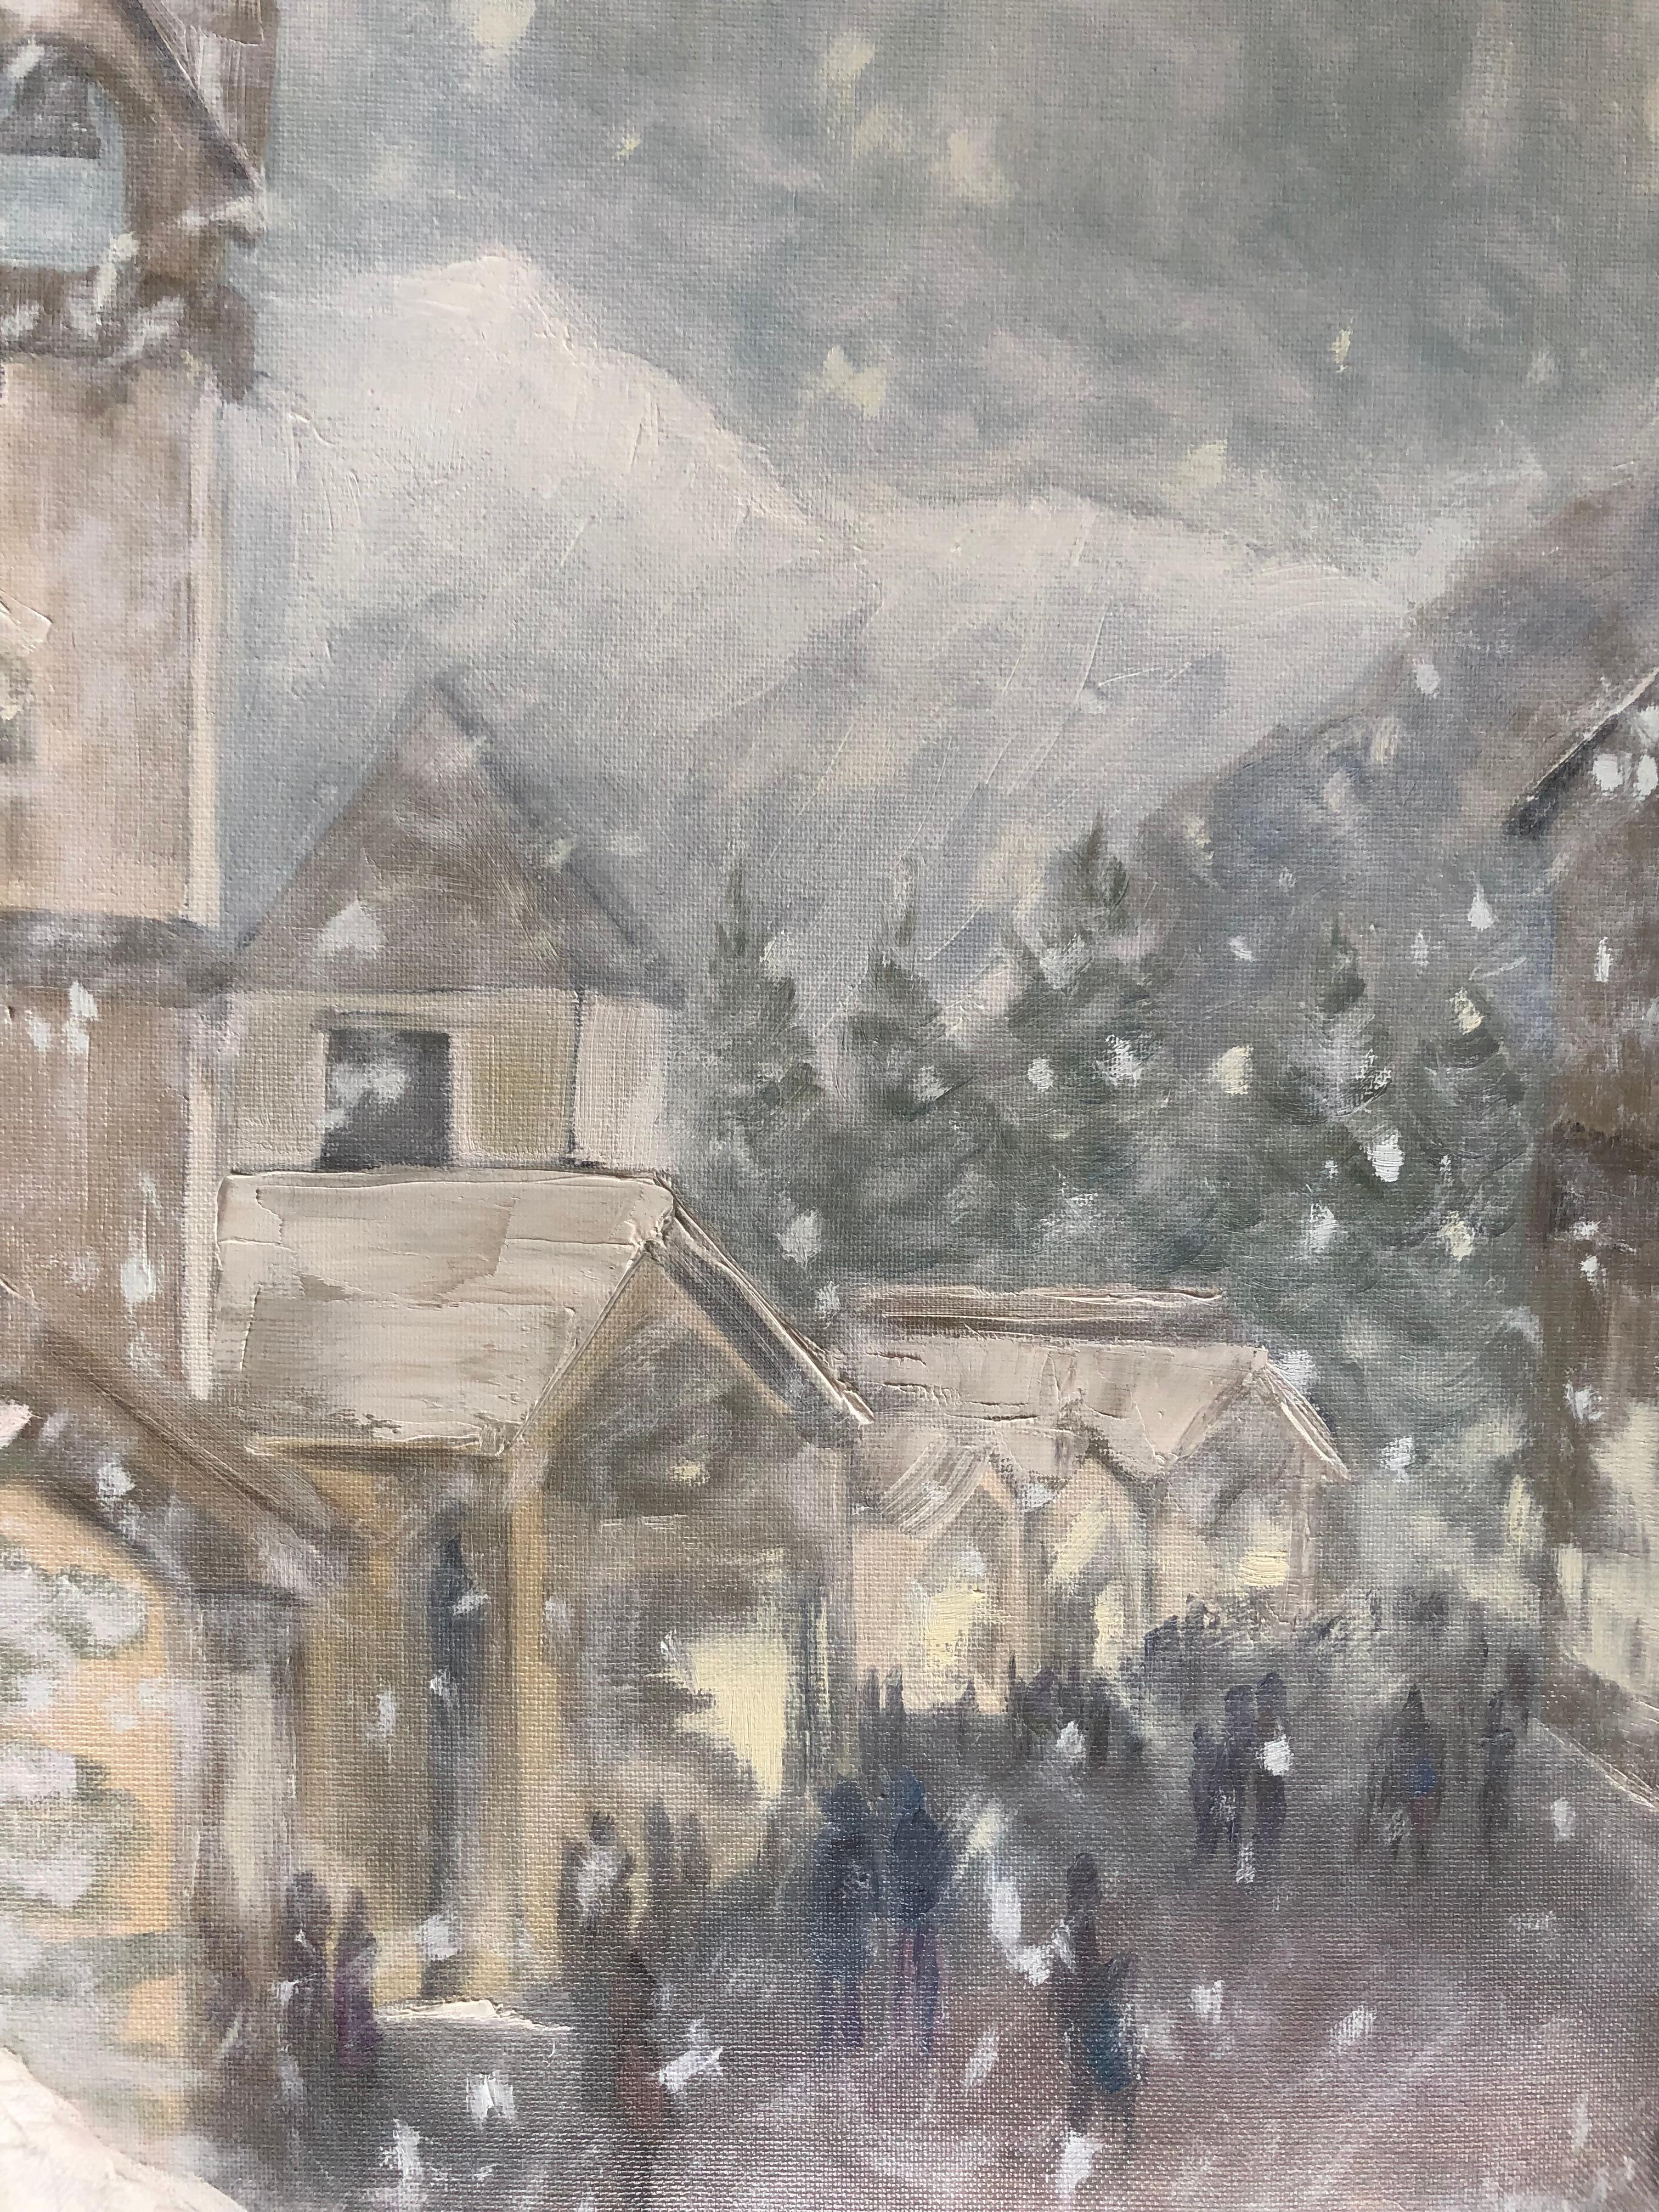 Snow in Vail Village (Grau), Landscape Painting, von Leigh Ann Van Fossan